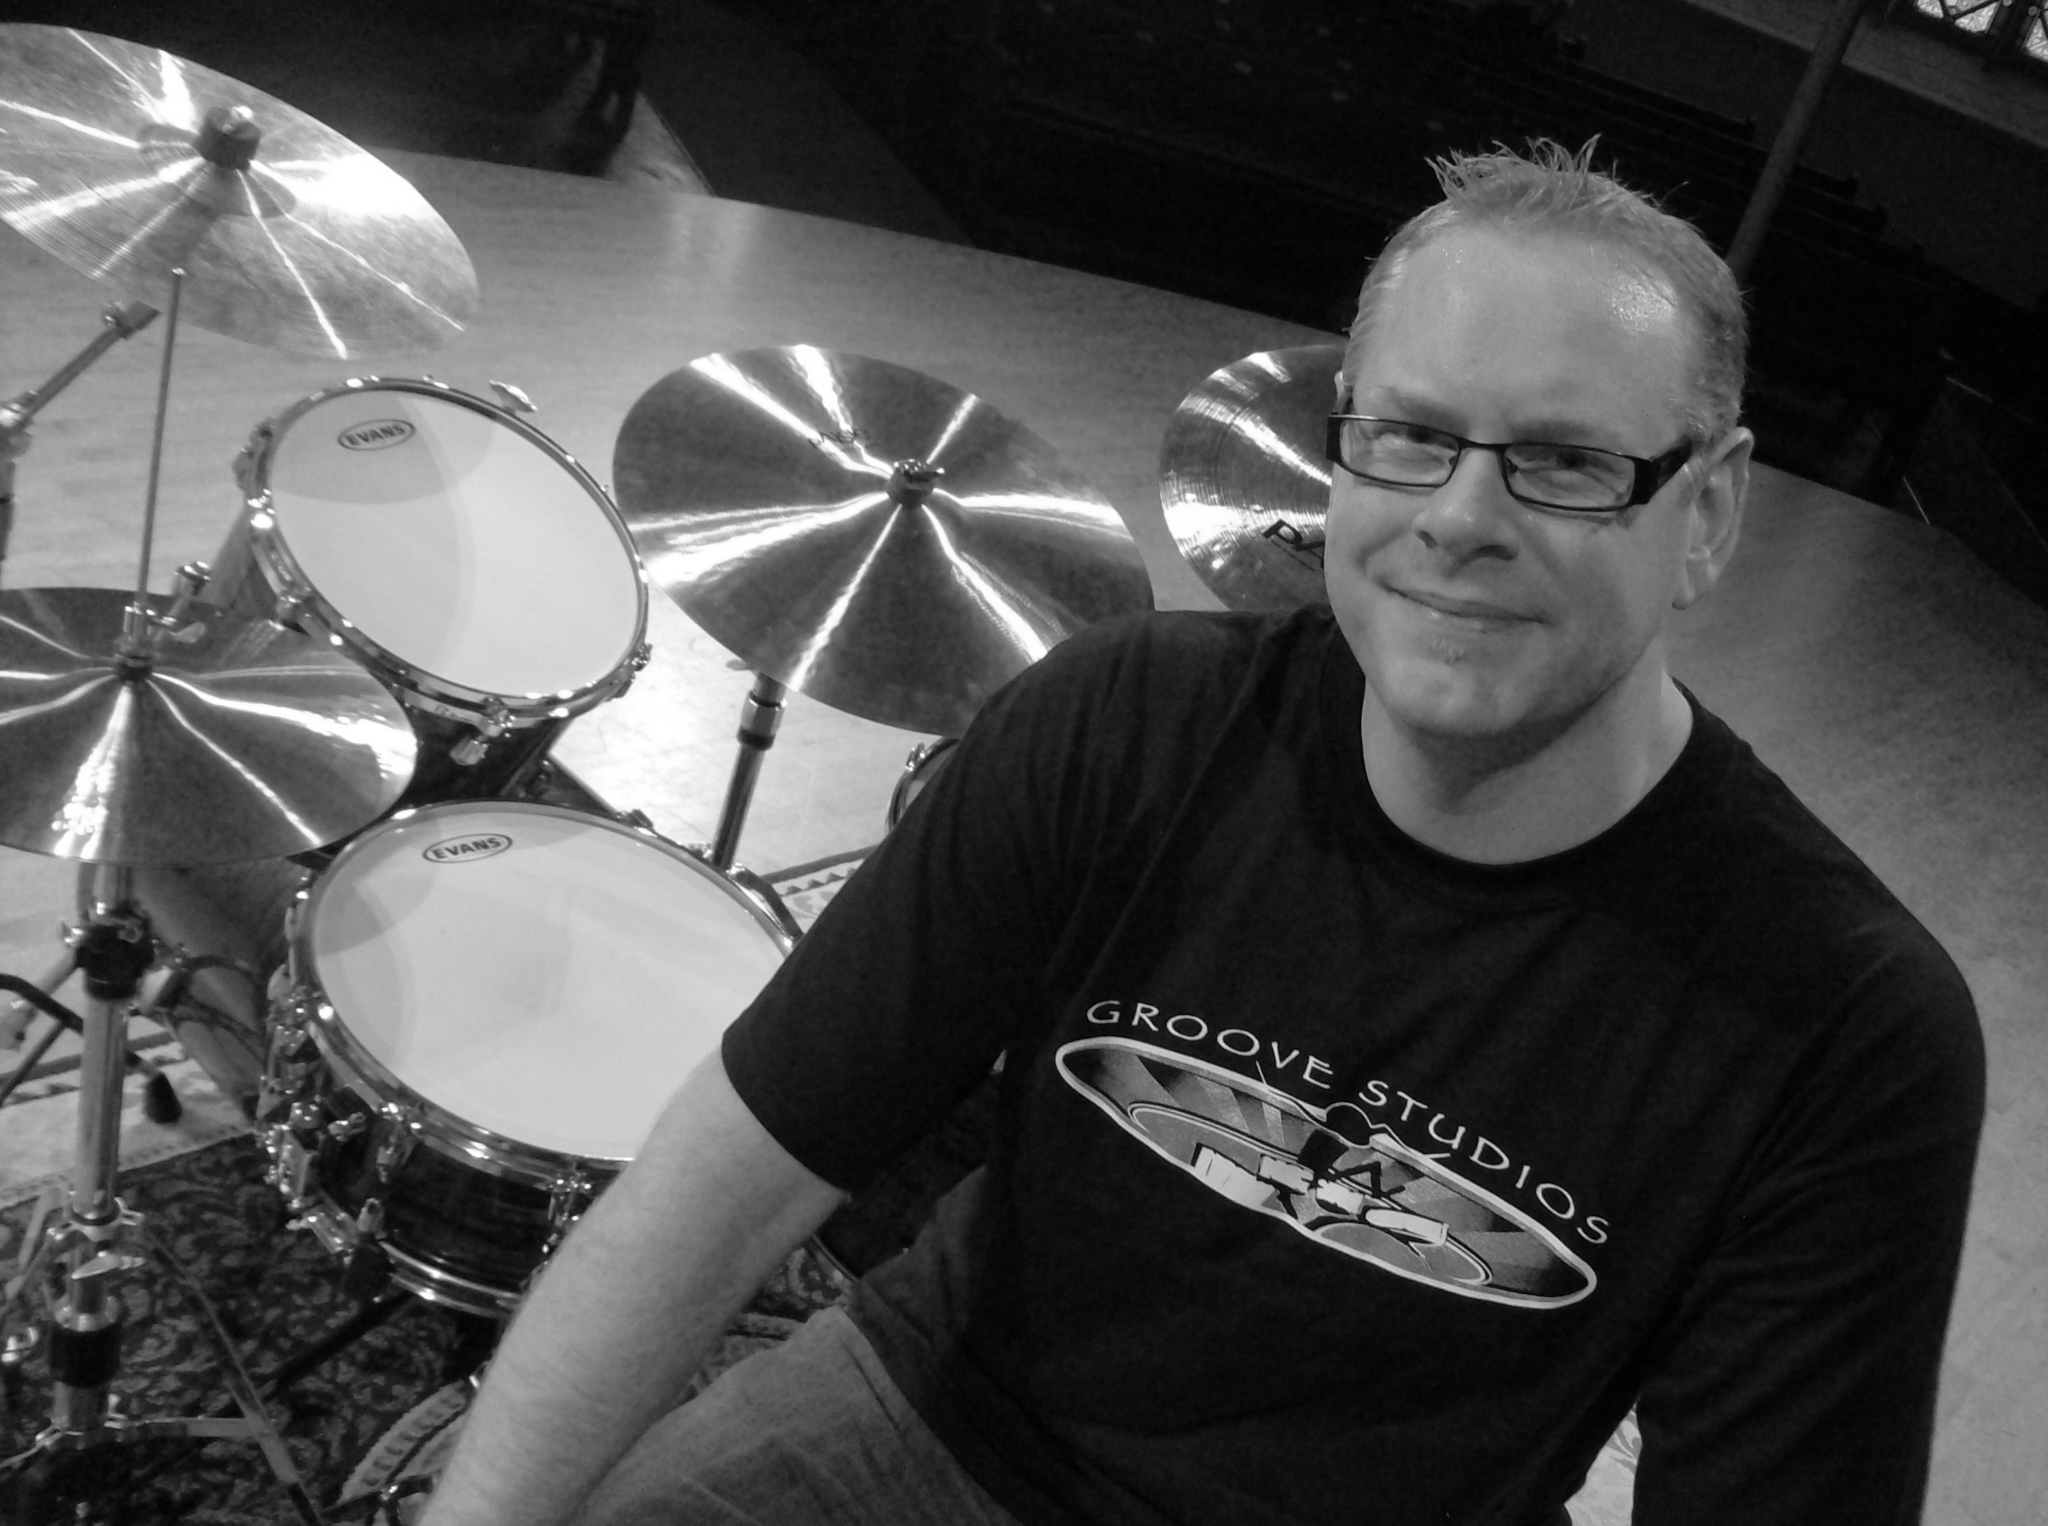 Groove Studios Drum Lessons - Music Lessons & Schools